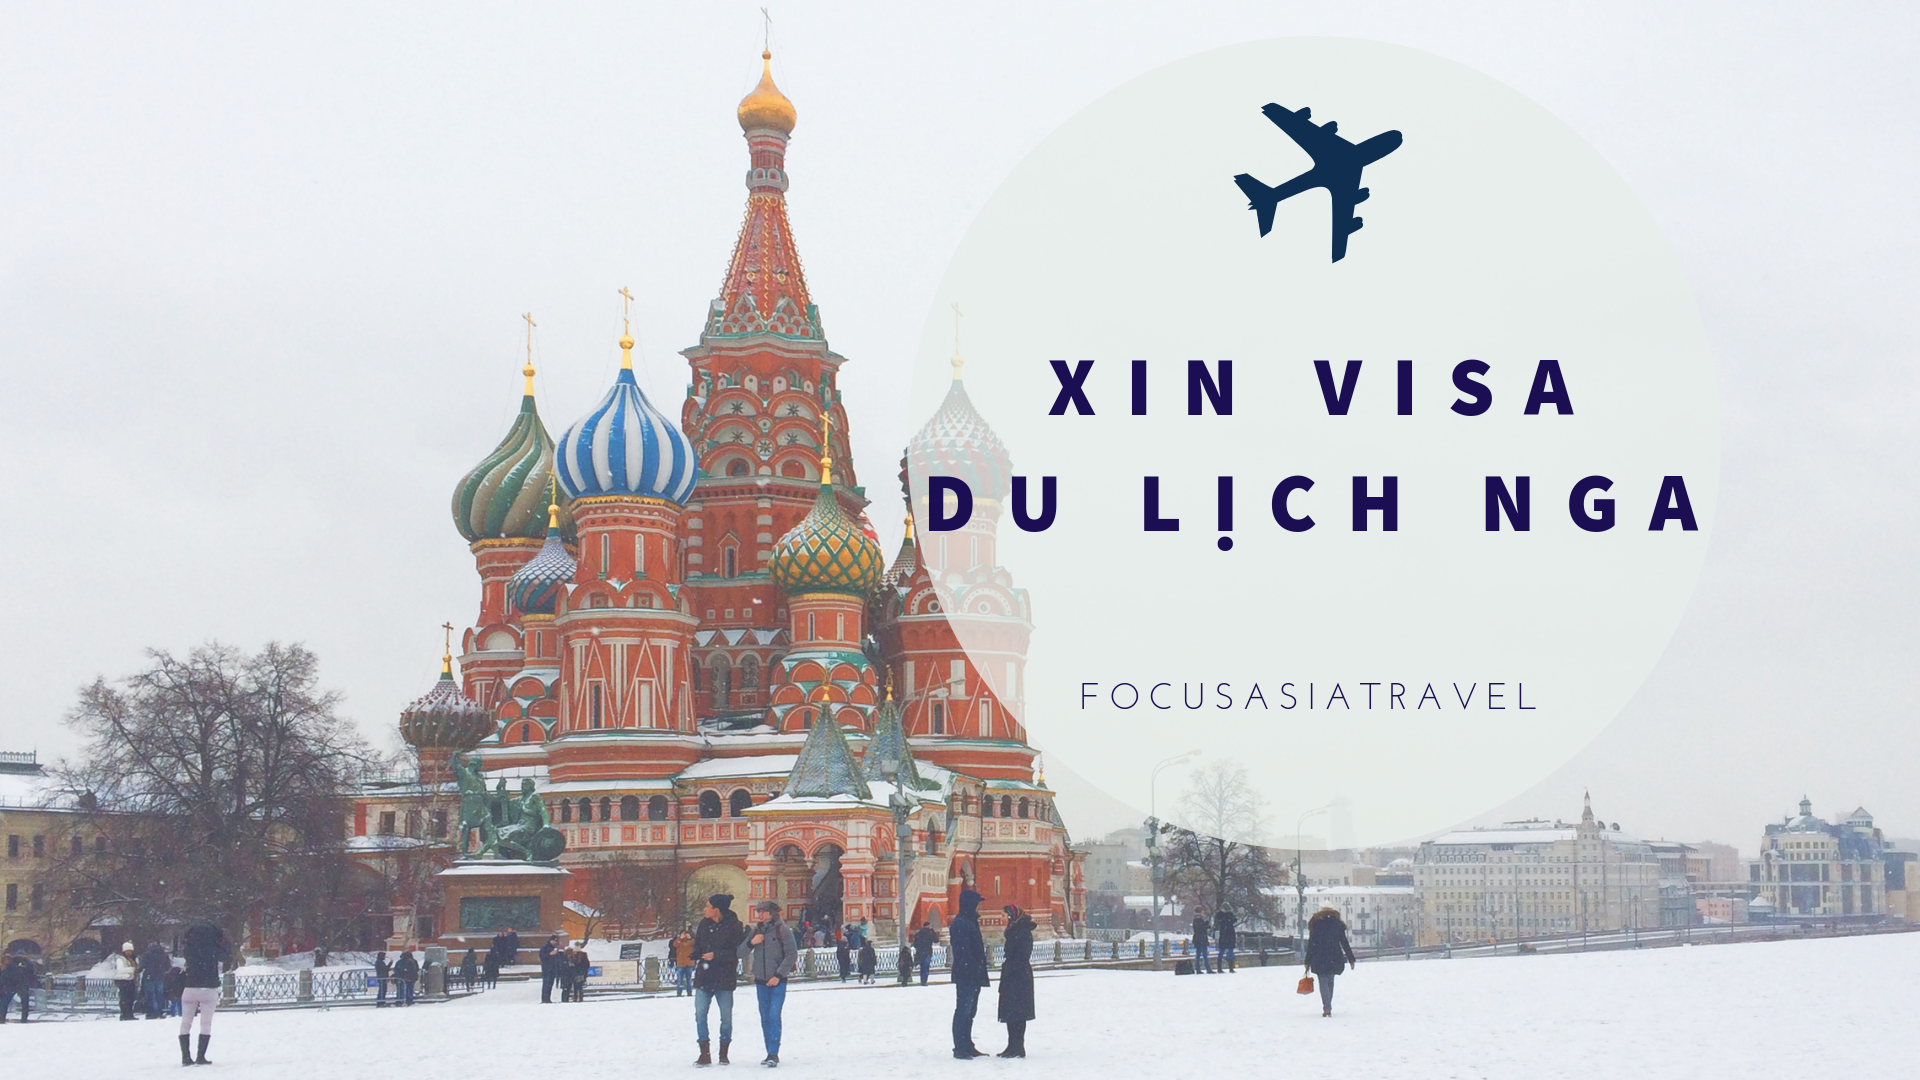 Du lịch Moscow - Xin visa du lịch Nga